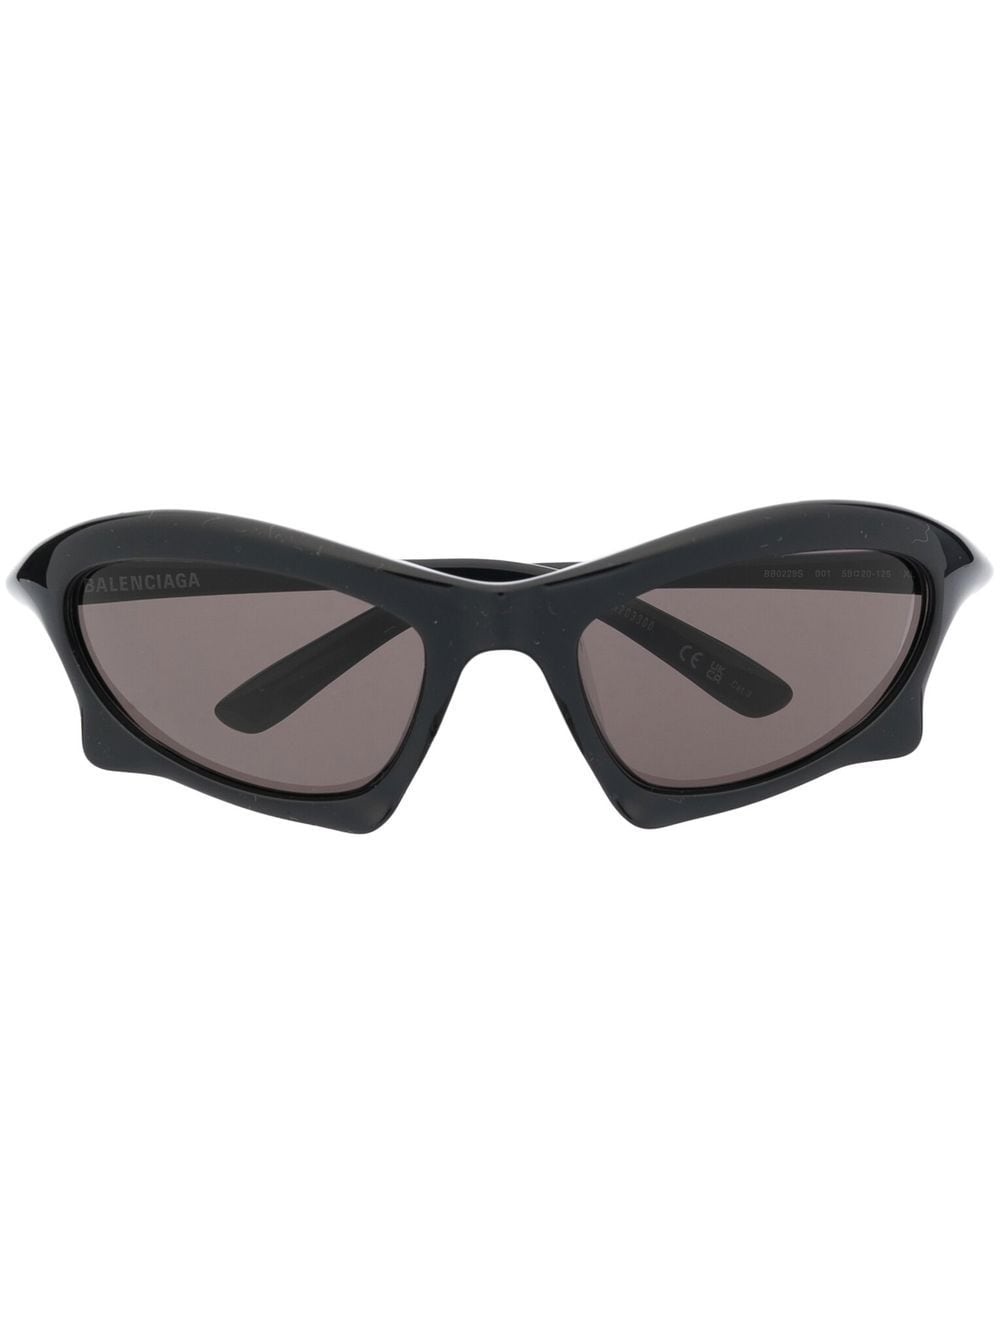 Bat rectangle sunglasses - 1